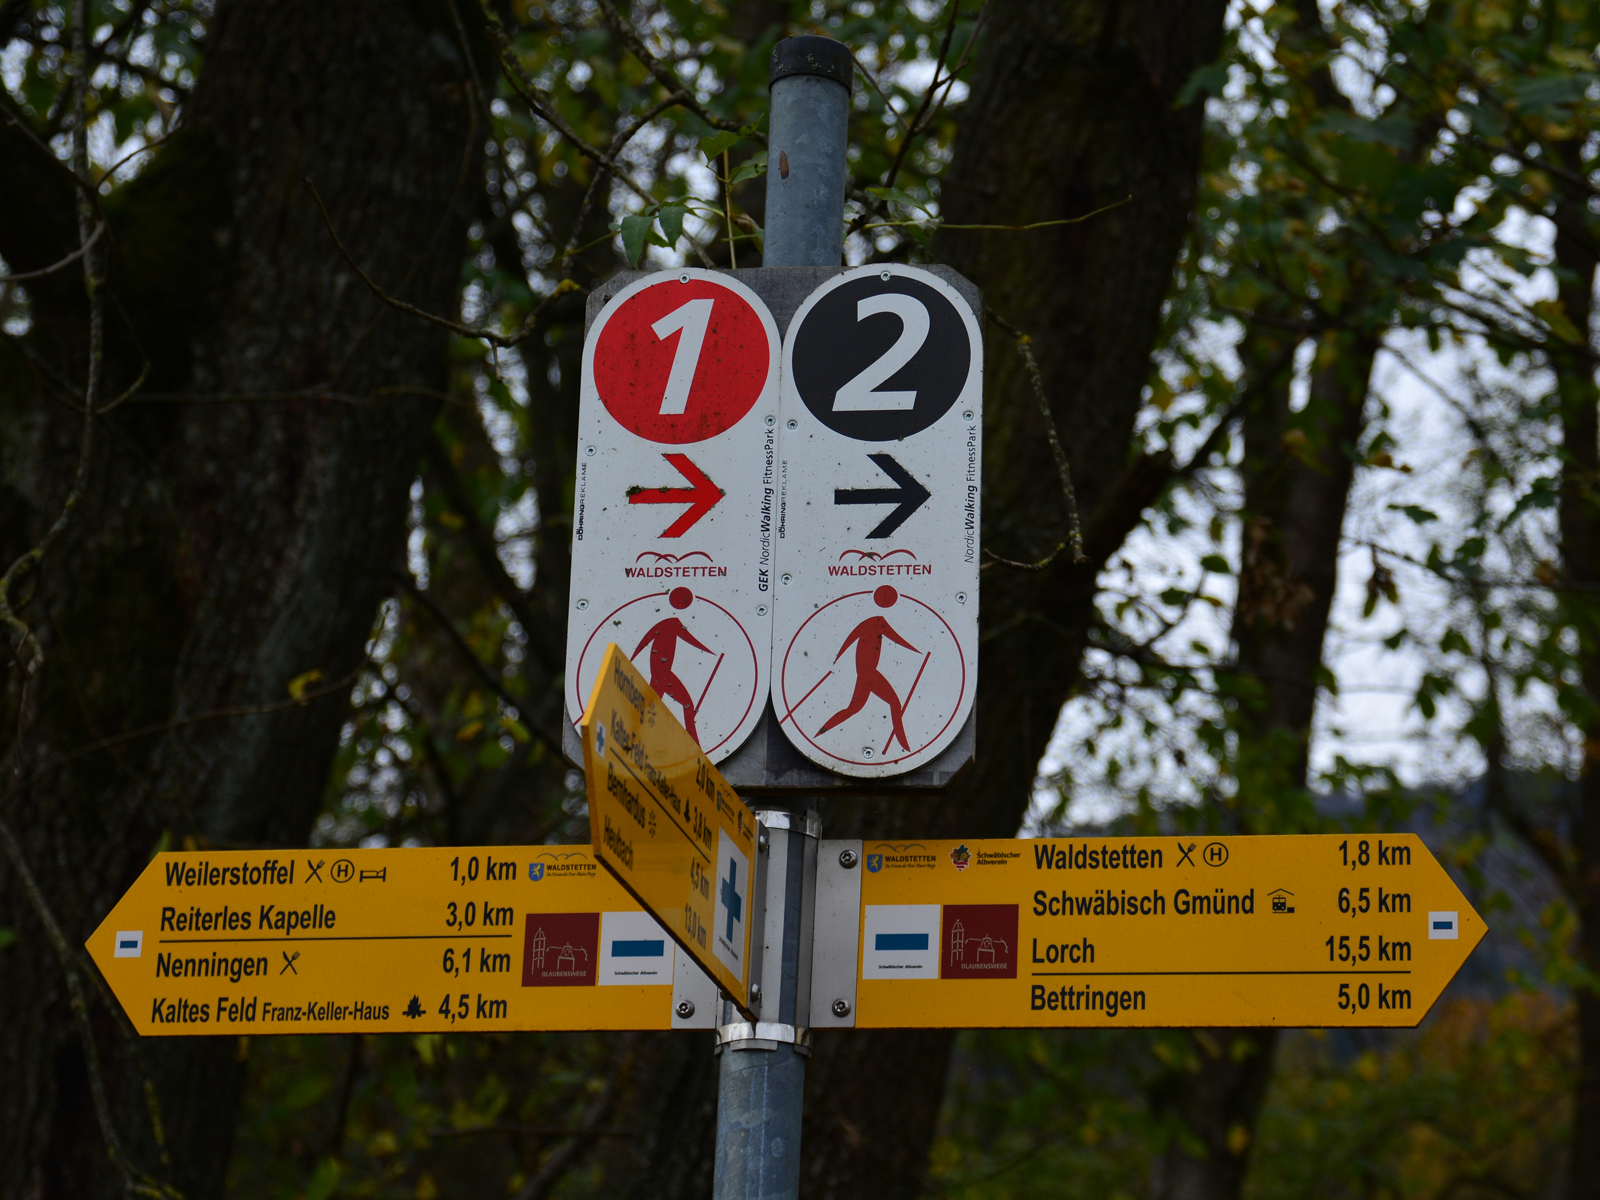  Kombinierte Beschildung der Nordic Walking-Routen und des Wanderwegenetzes zwischen Waldstetten und Weilerstoffel 